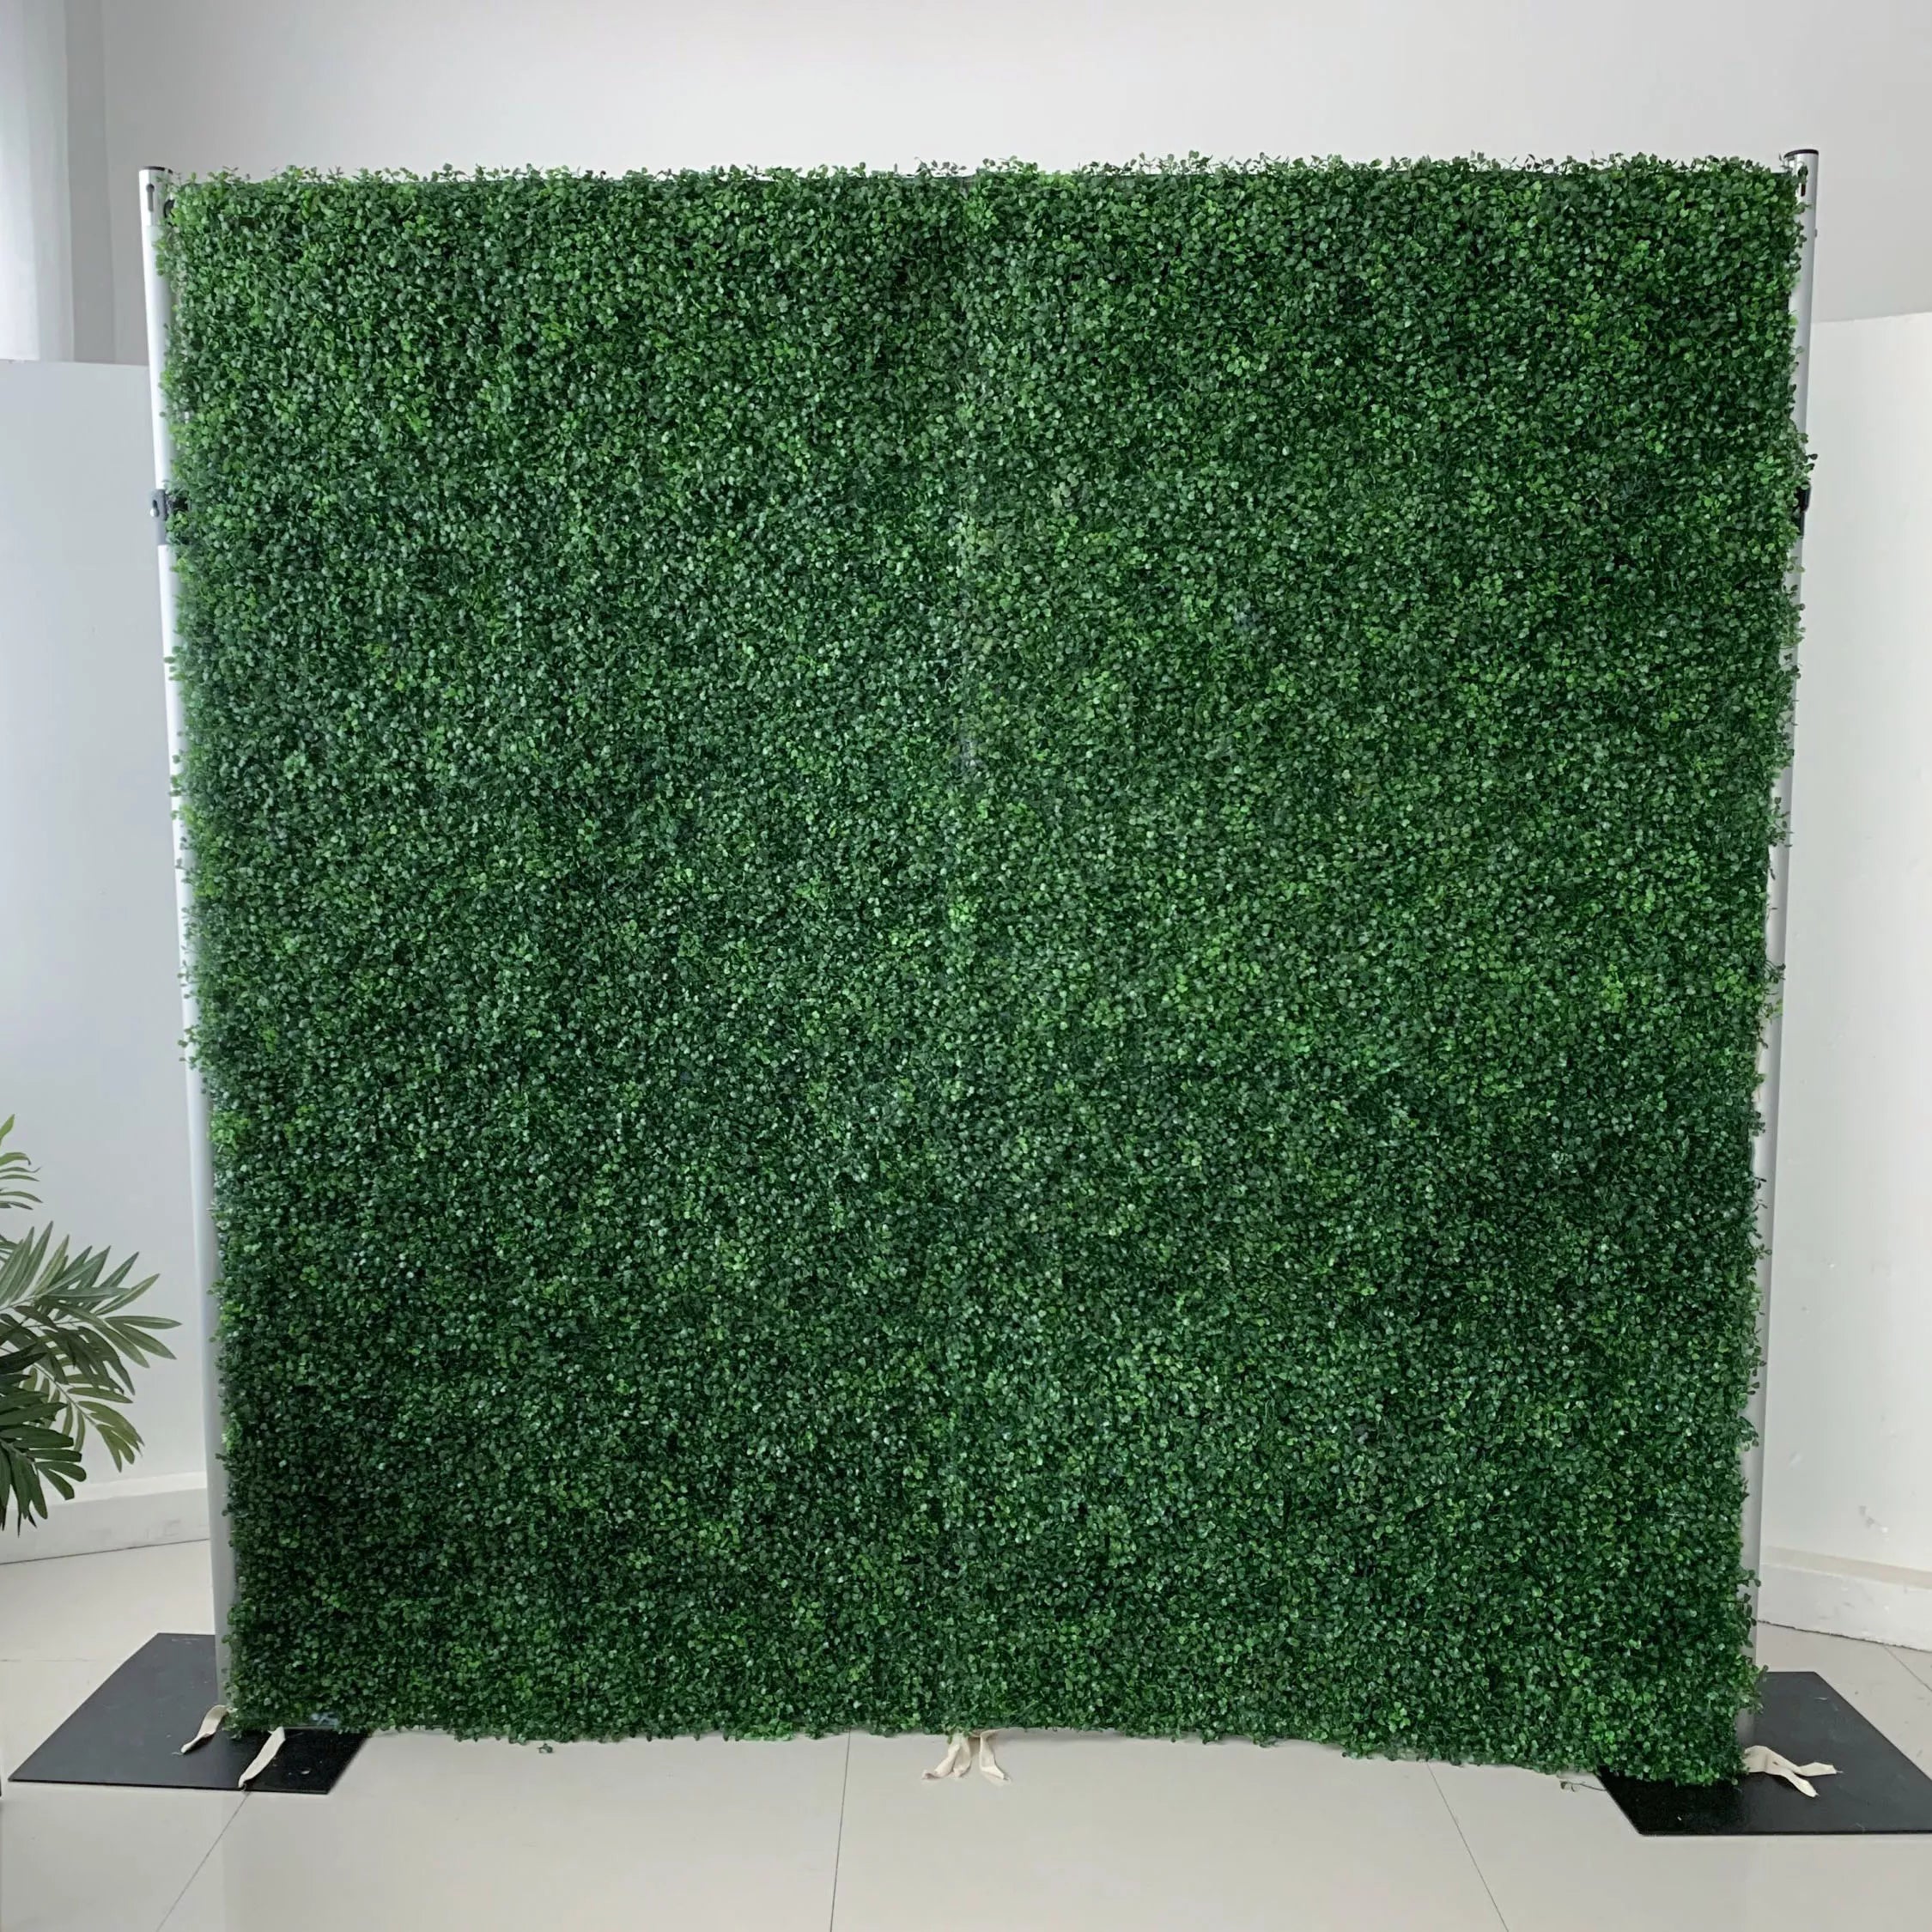 زهور فالار قماش عشب أخضر اصطناعي خلفية جدار زفاف ، ديكور حفلات زهور ، حدث لفة للأعلى